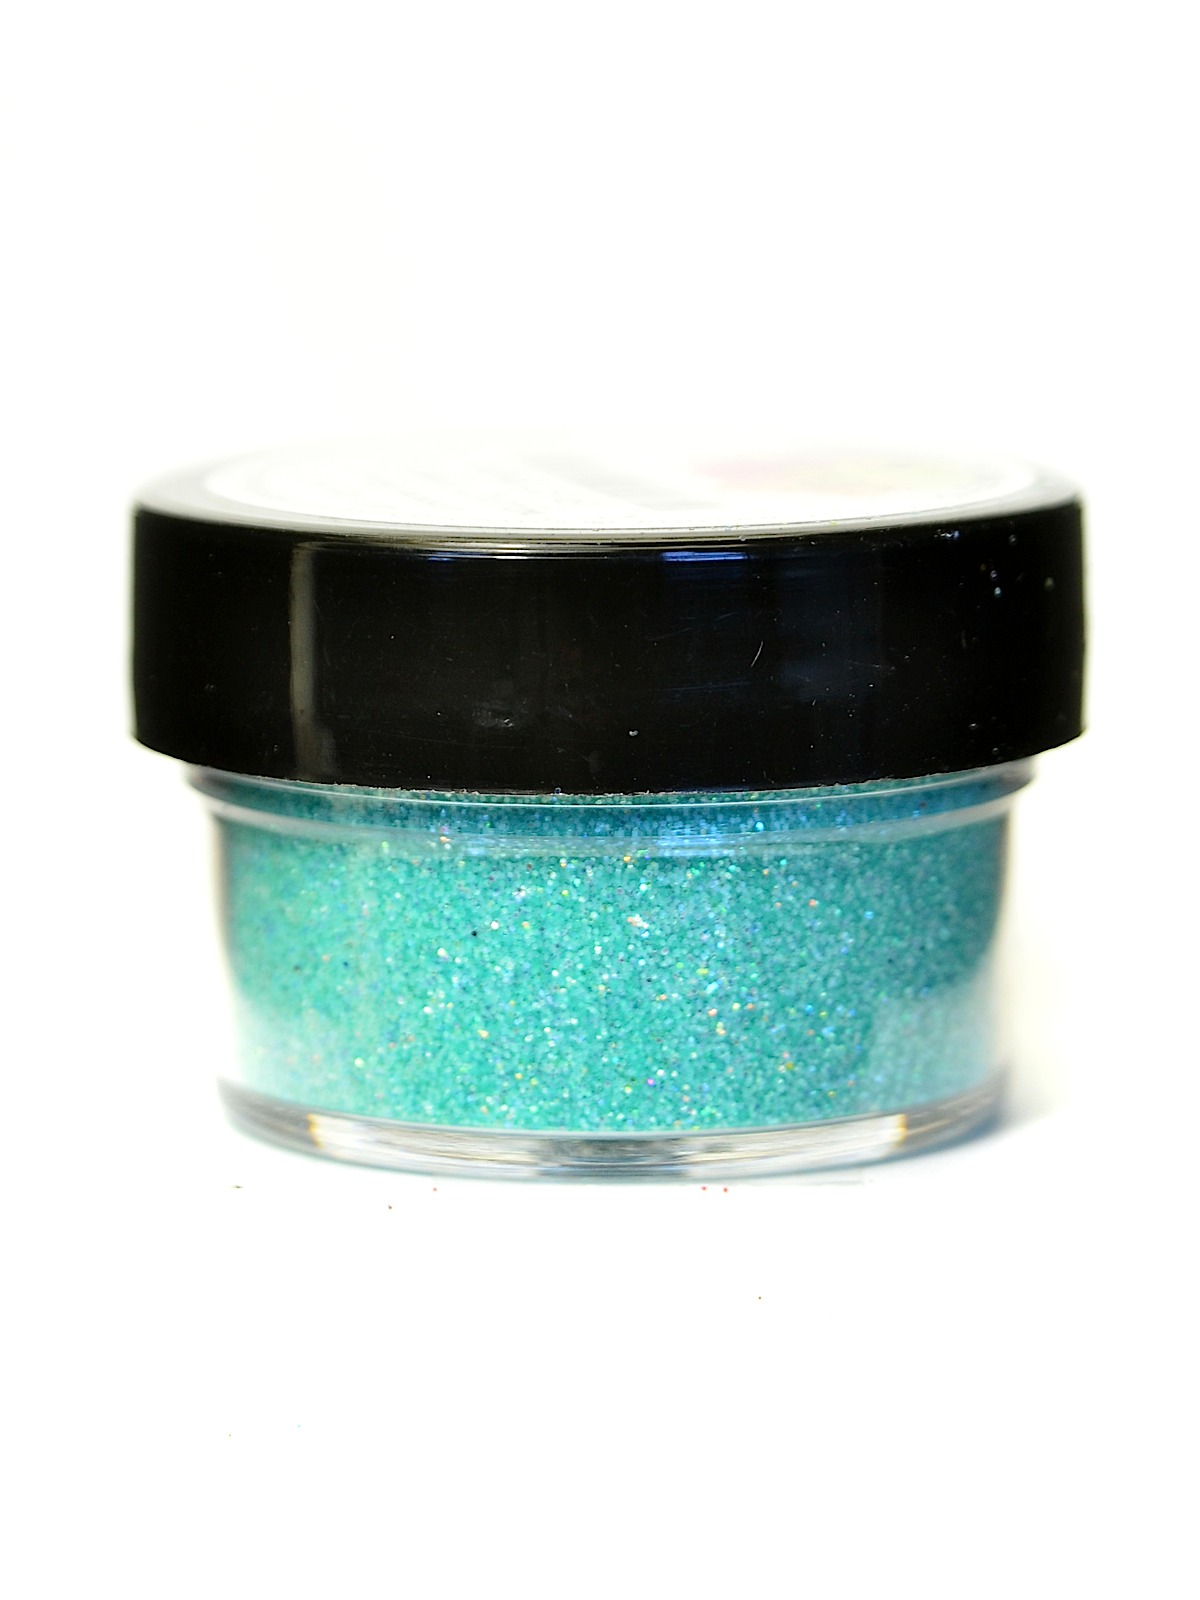 Ultrafine Pearlescent Glitter Mint Chiffon 1 2 Oz. Jar